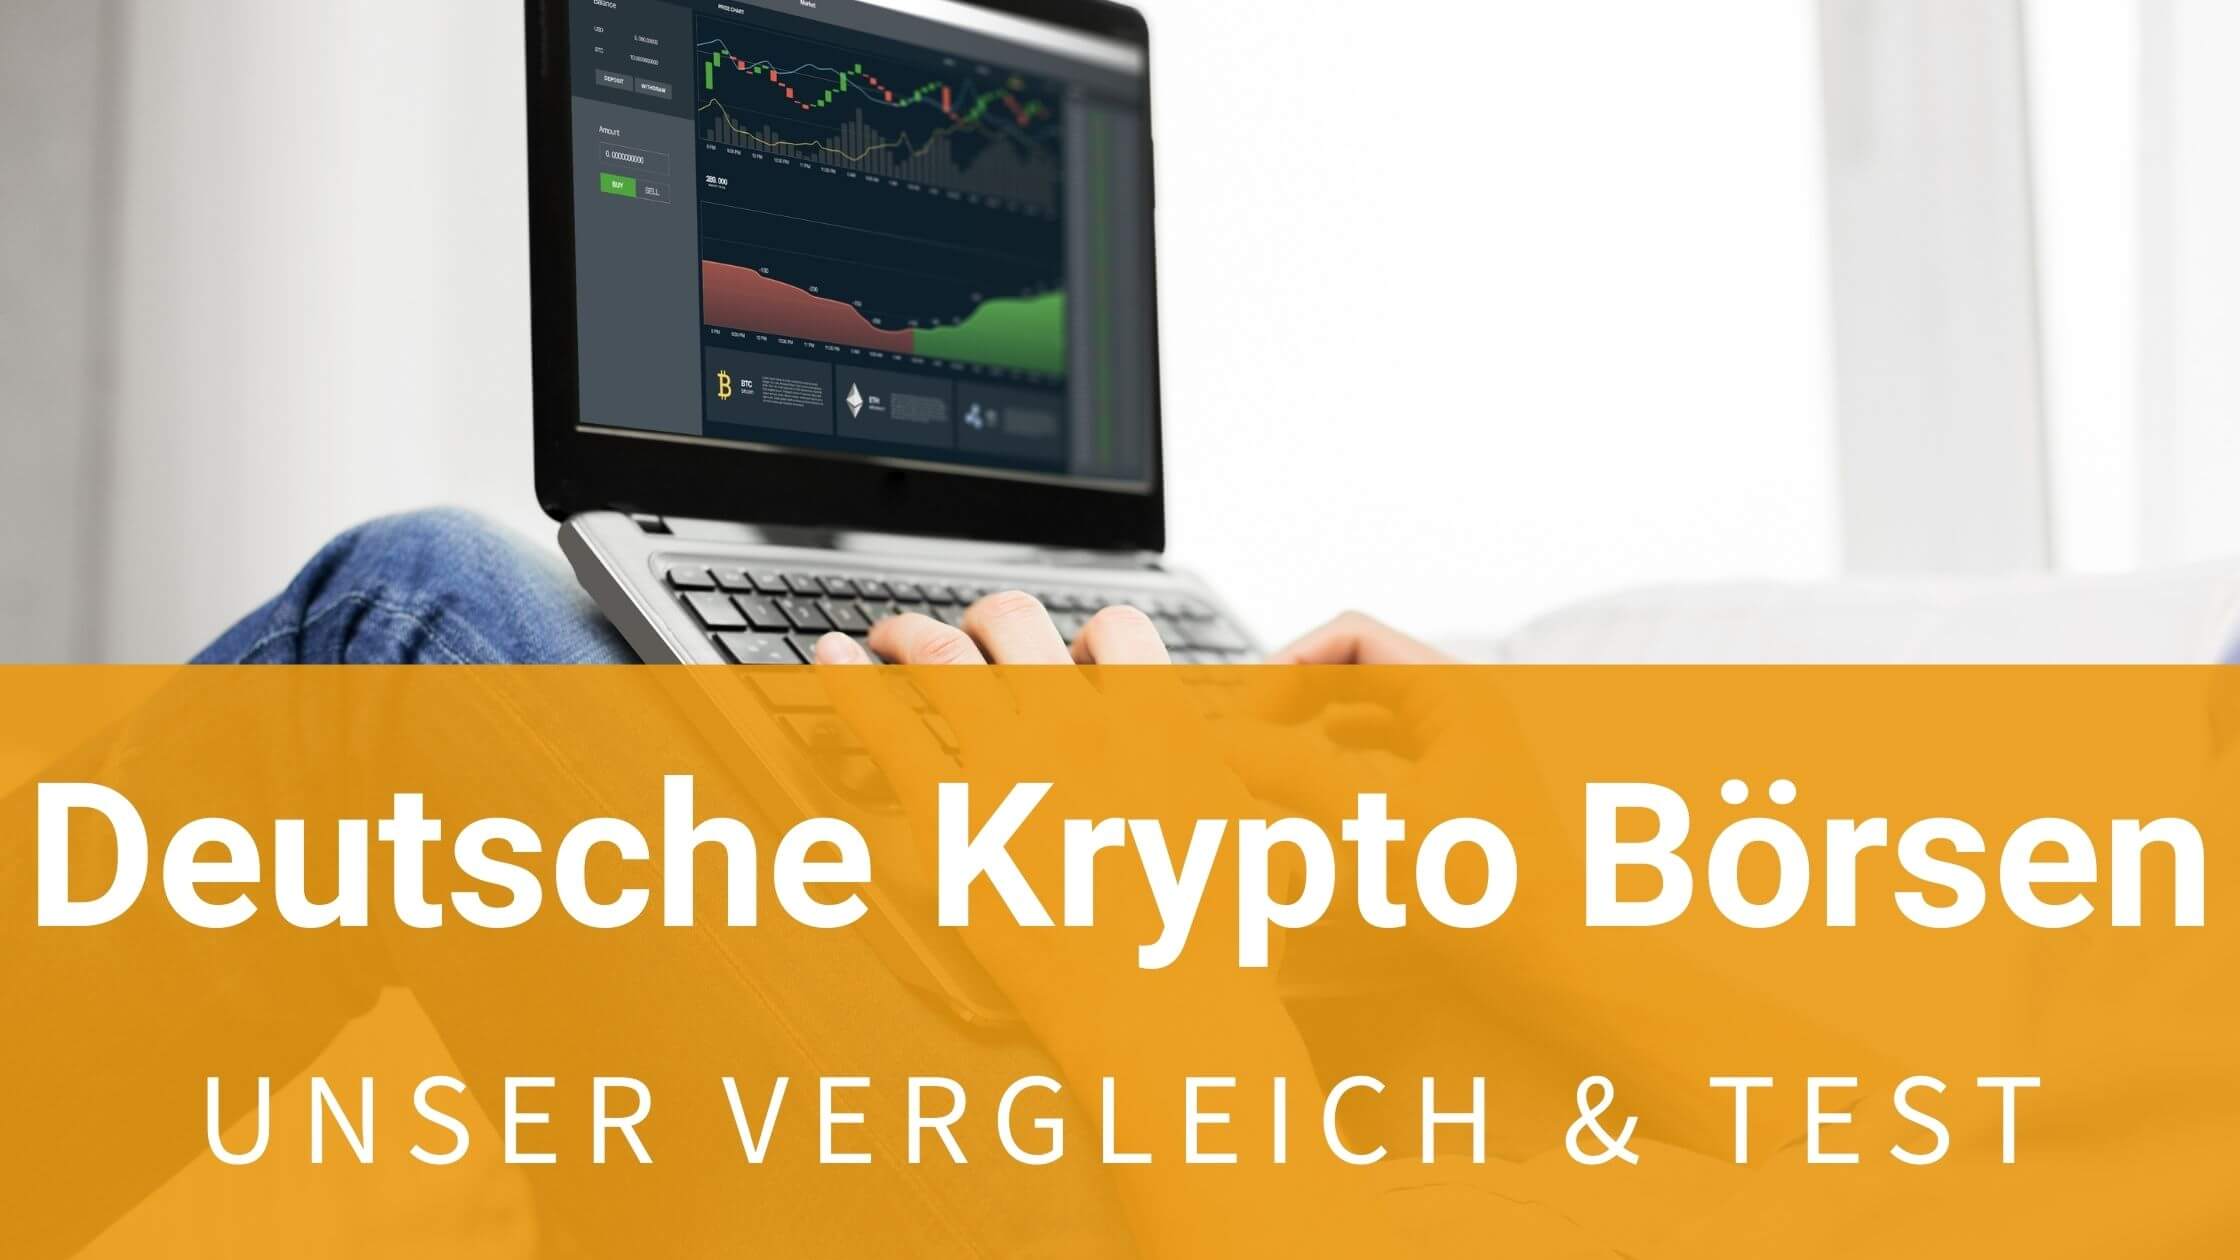 Deutsche Krypto Börse im Vergleich 2021: Unser Test!